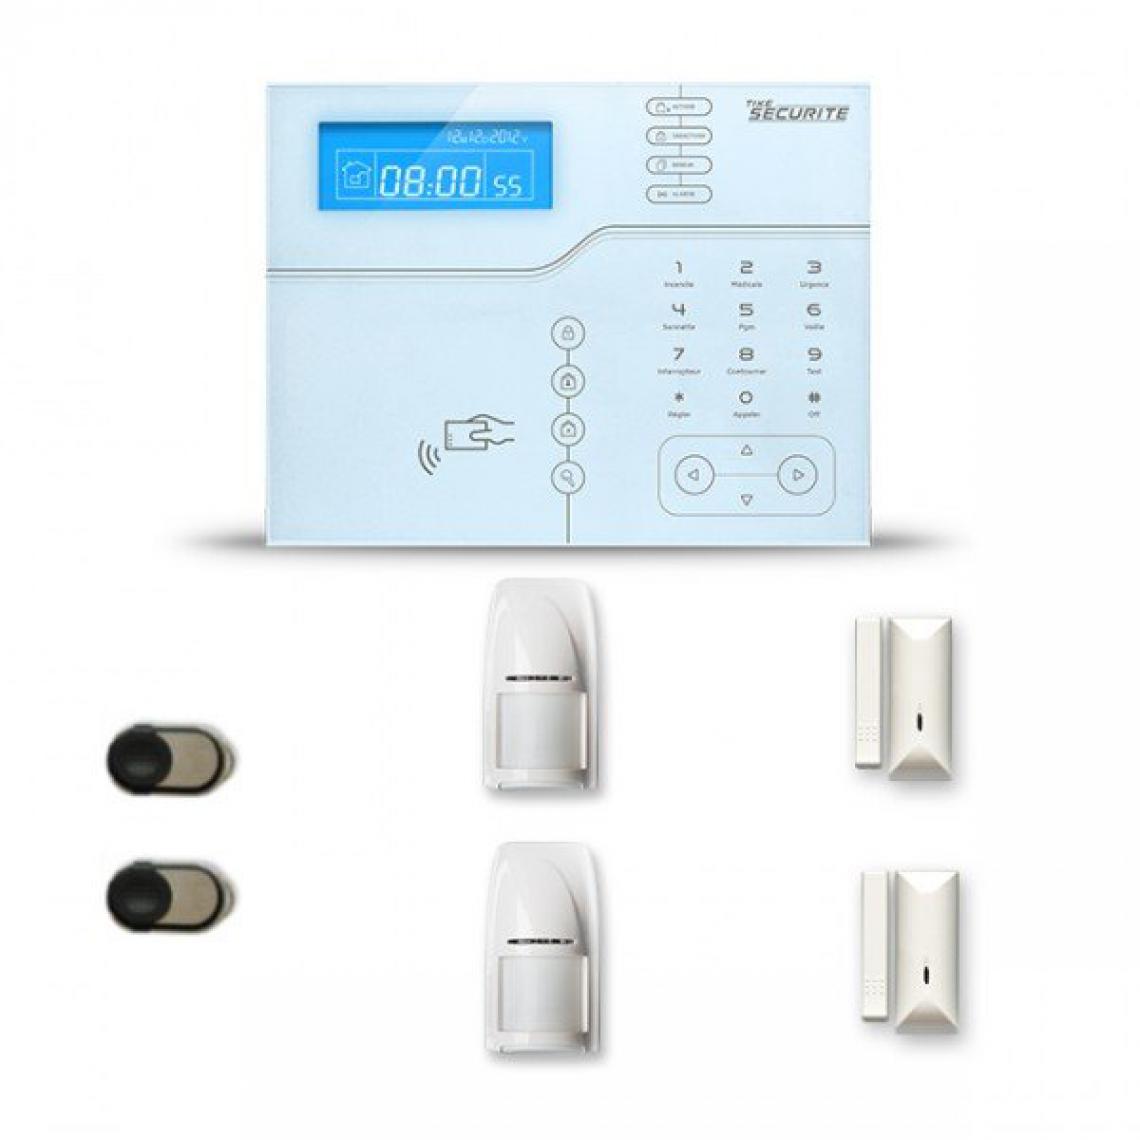 Tike Securite - Alarme maison sans fil SHB20 GSM/IP avec option GSM incluse - Alarme connectée